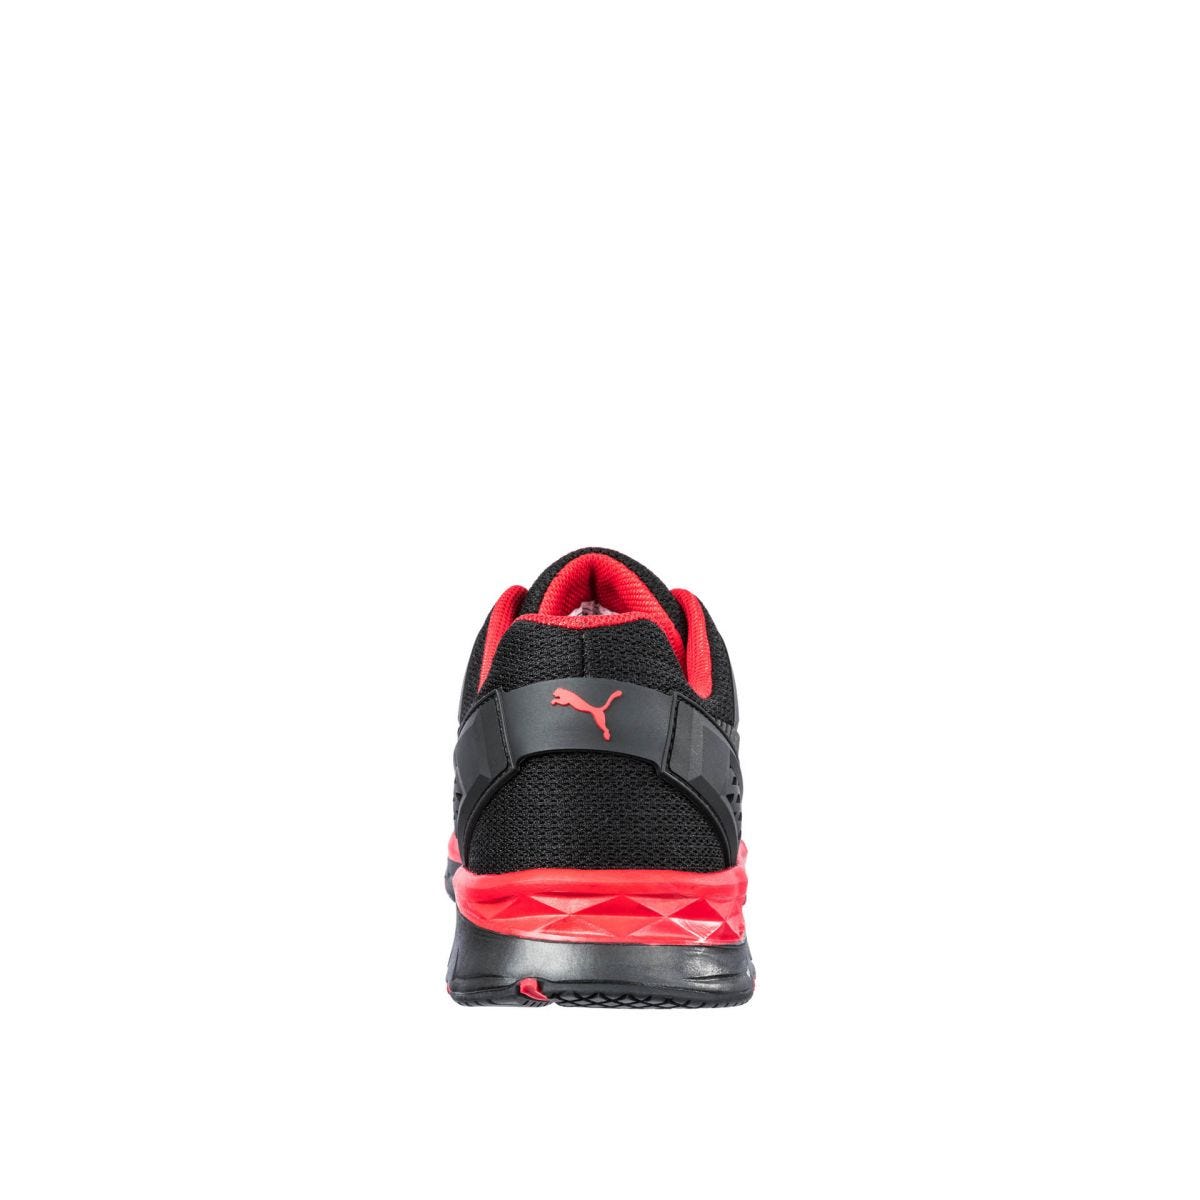 Chaussures de sécurité Fuse Motion 2.0 low S1P ESD HRO SRC rouge - Puma - Taille 42 1